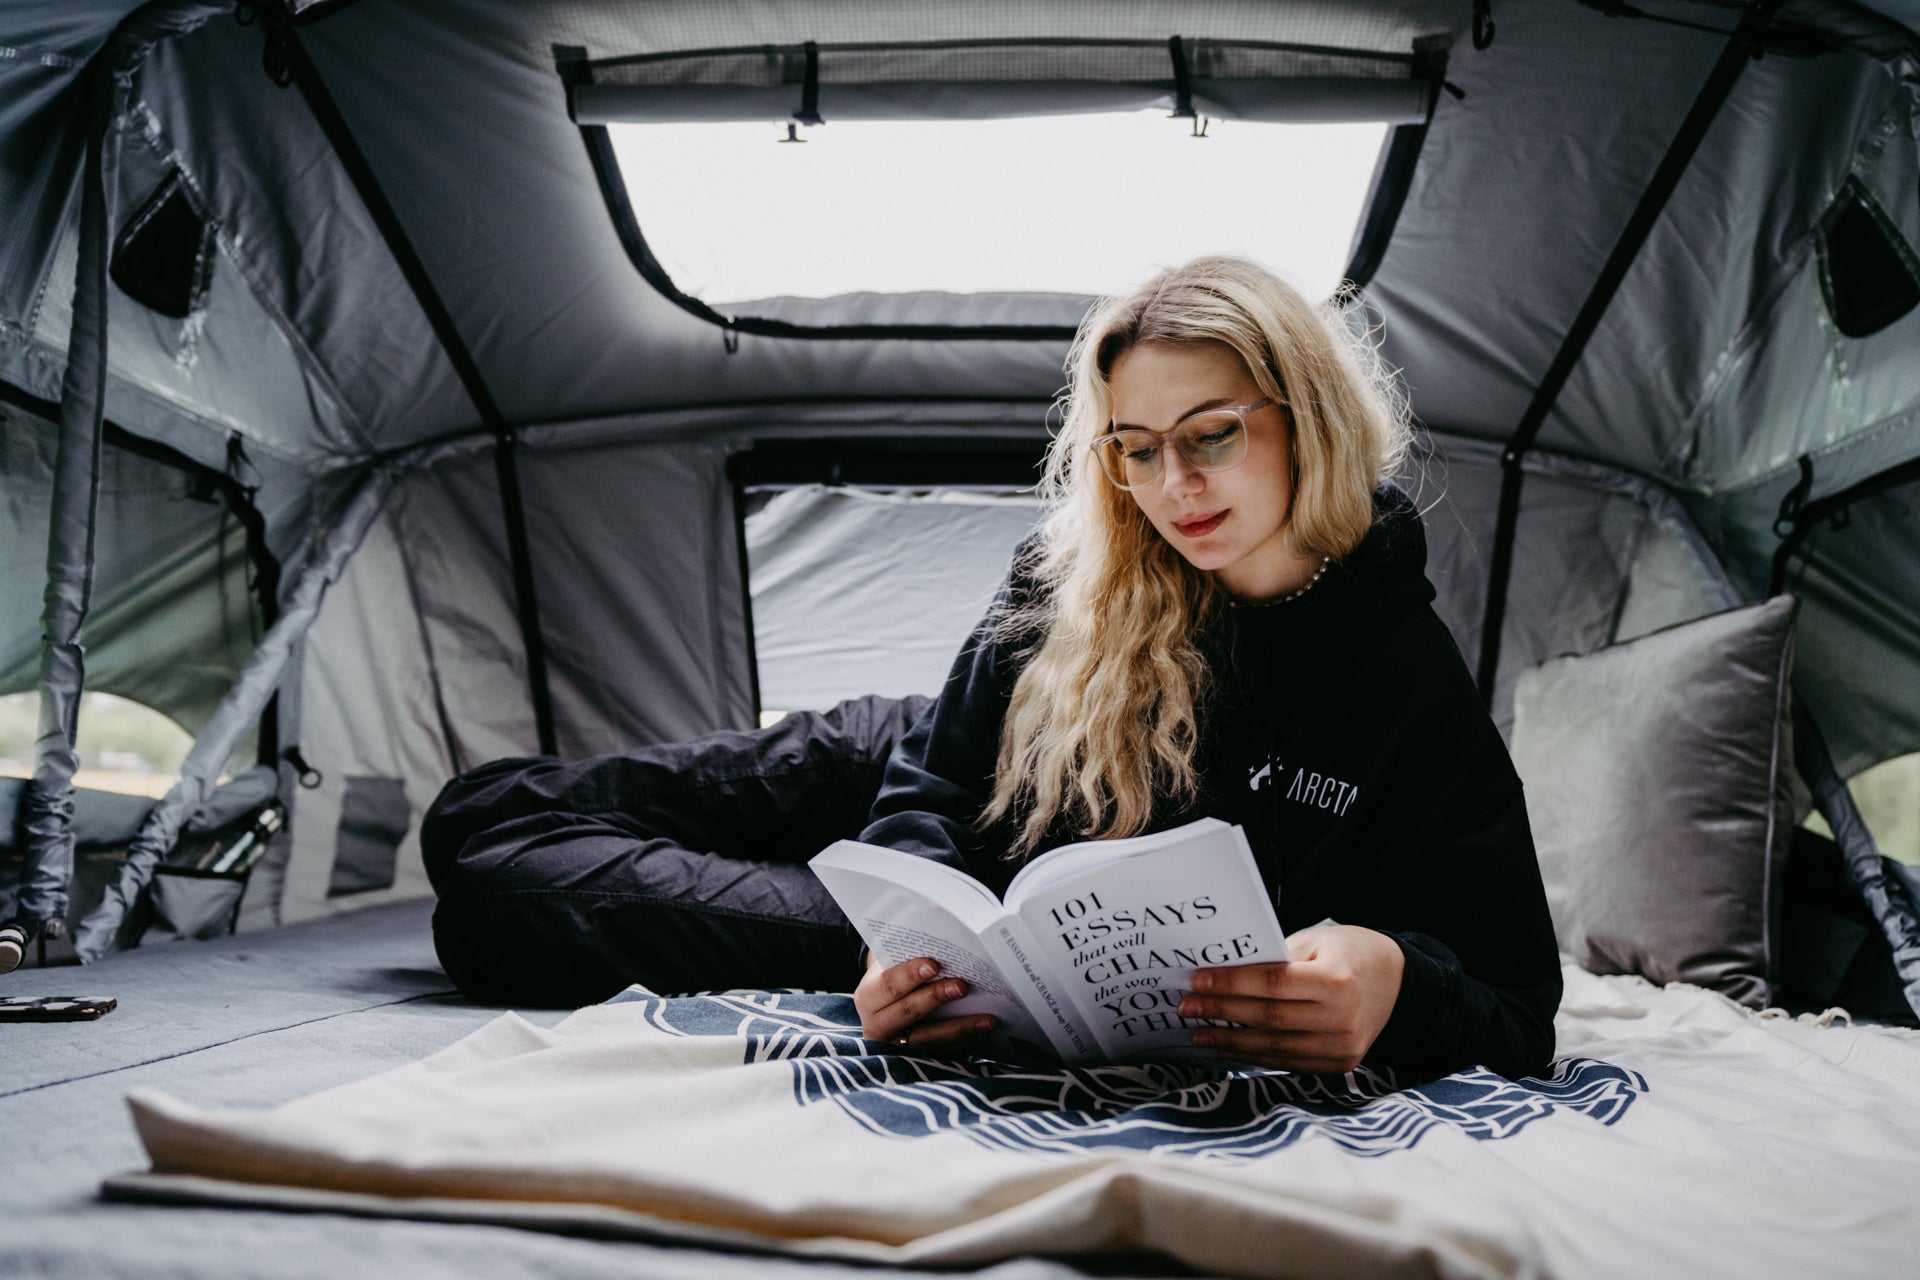 Camping: Schlafen auf dem Dach – wenn das Auto zum Zelt wird